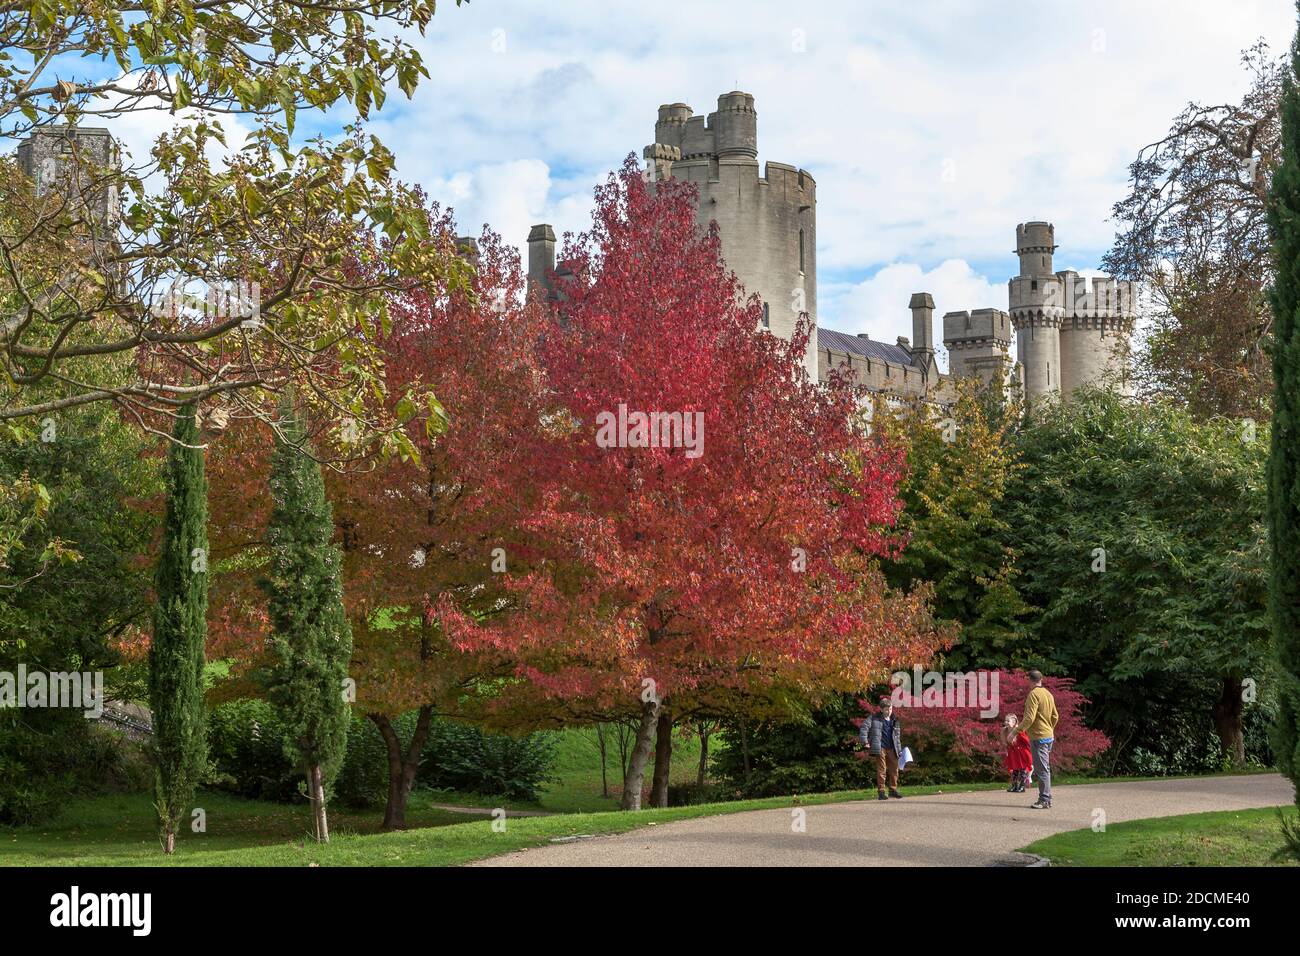 Château d'Arundel depuis les jardins du château, Arundel, West Sussex, Angleterre : couleur d'automne sur la sucrine américaine (Liquidambar styraciflua) au premier plan Banque D'Images